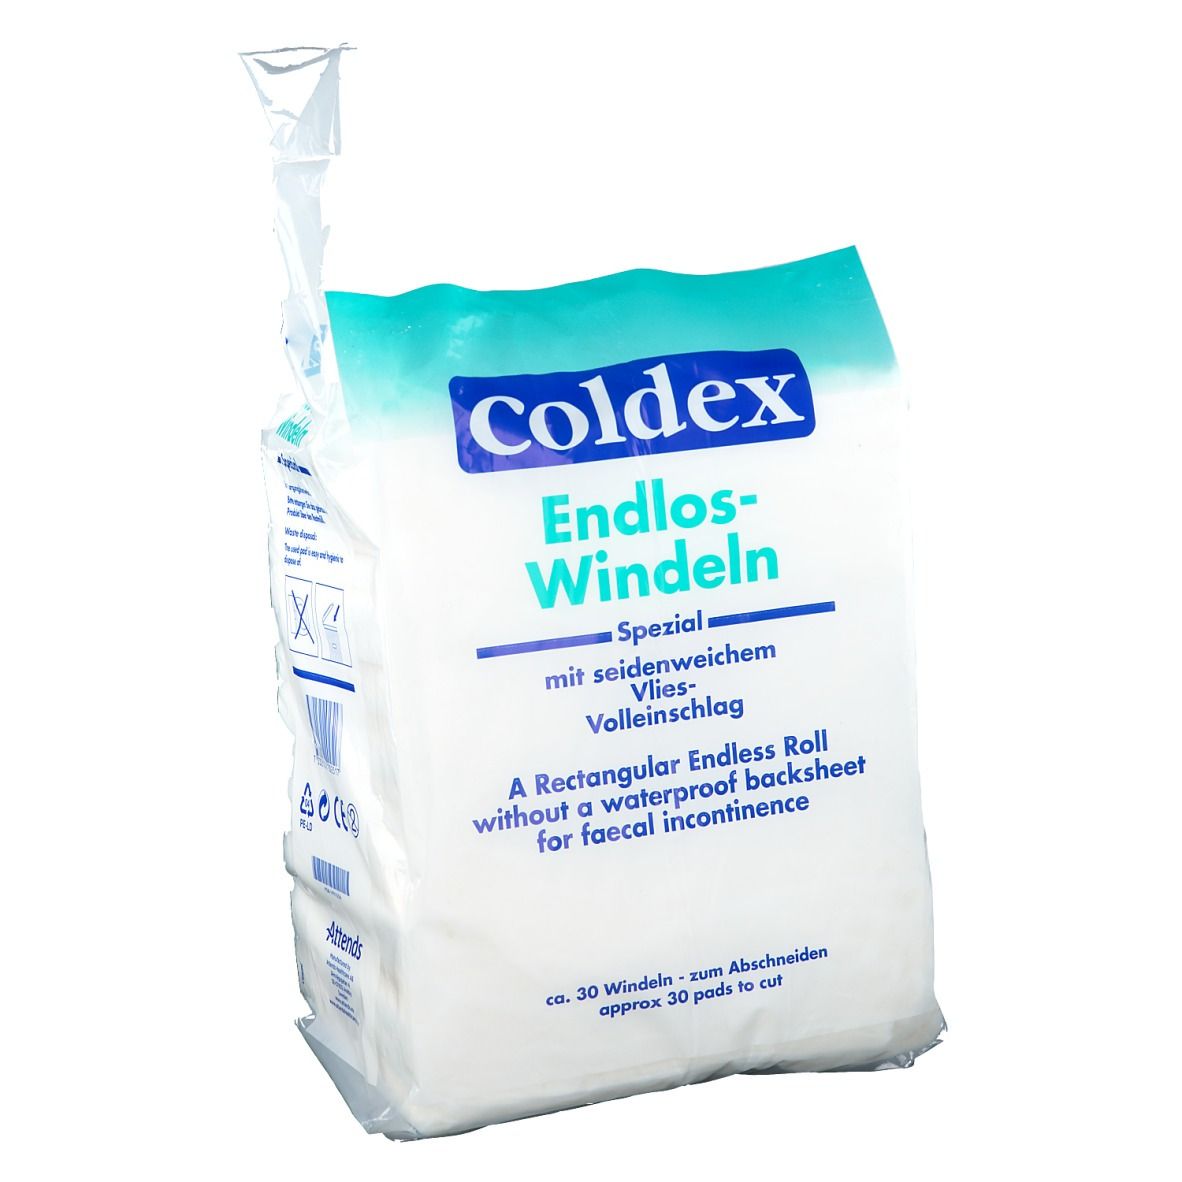 Coldex Endloswindeln